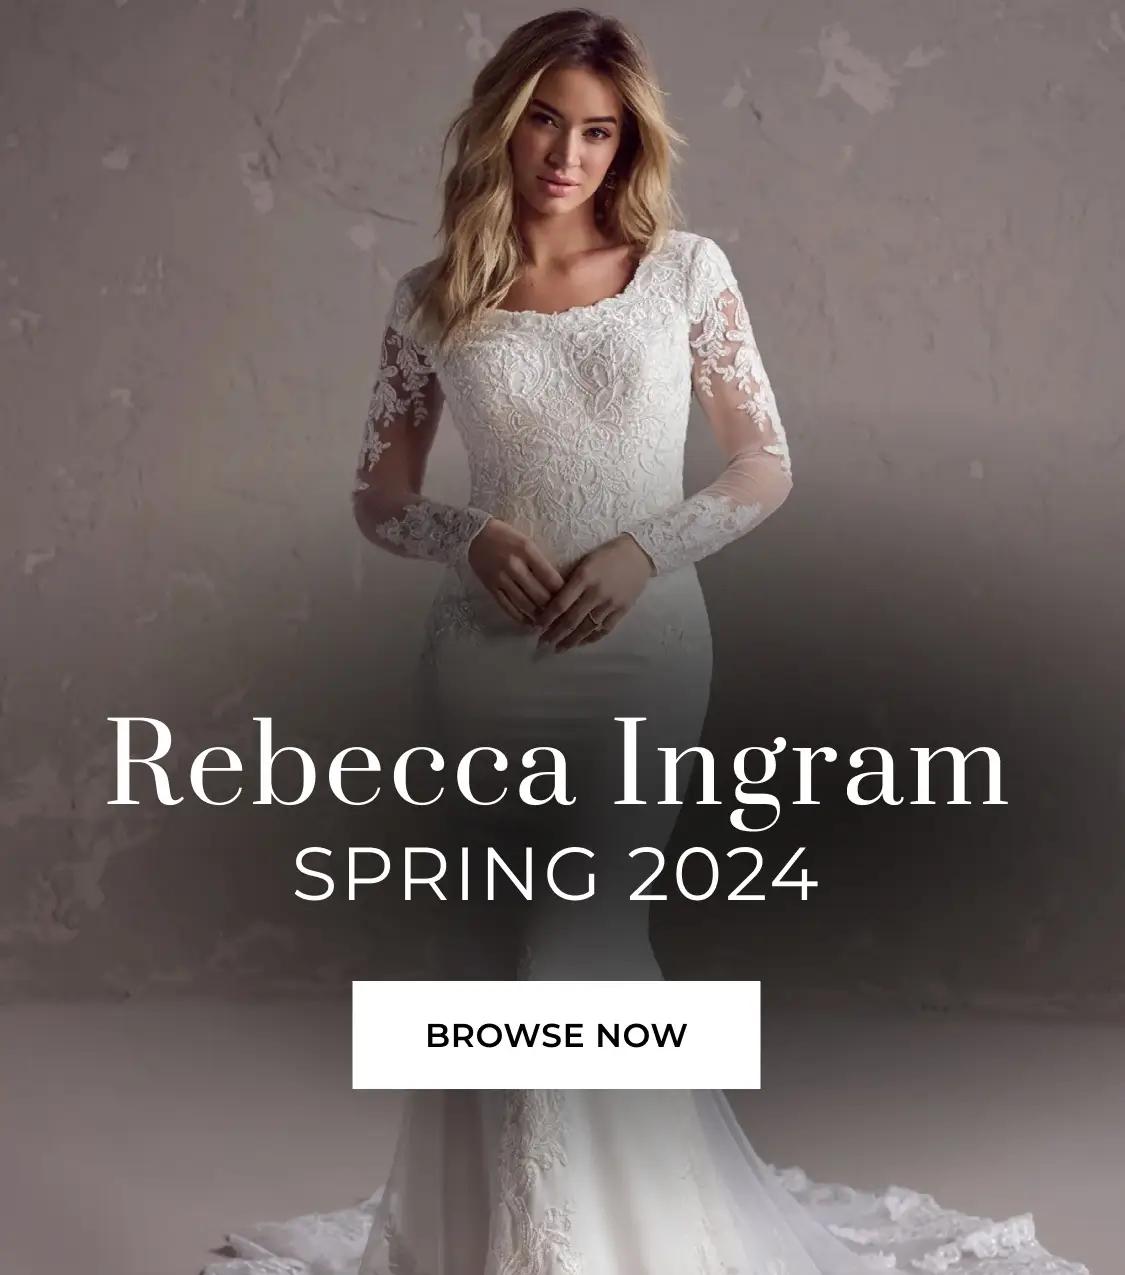 Rebecca Ingram Spring 2024 banner mobile